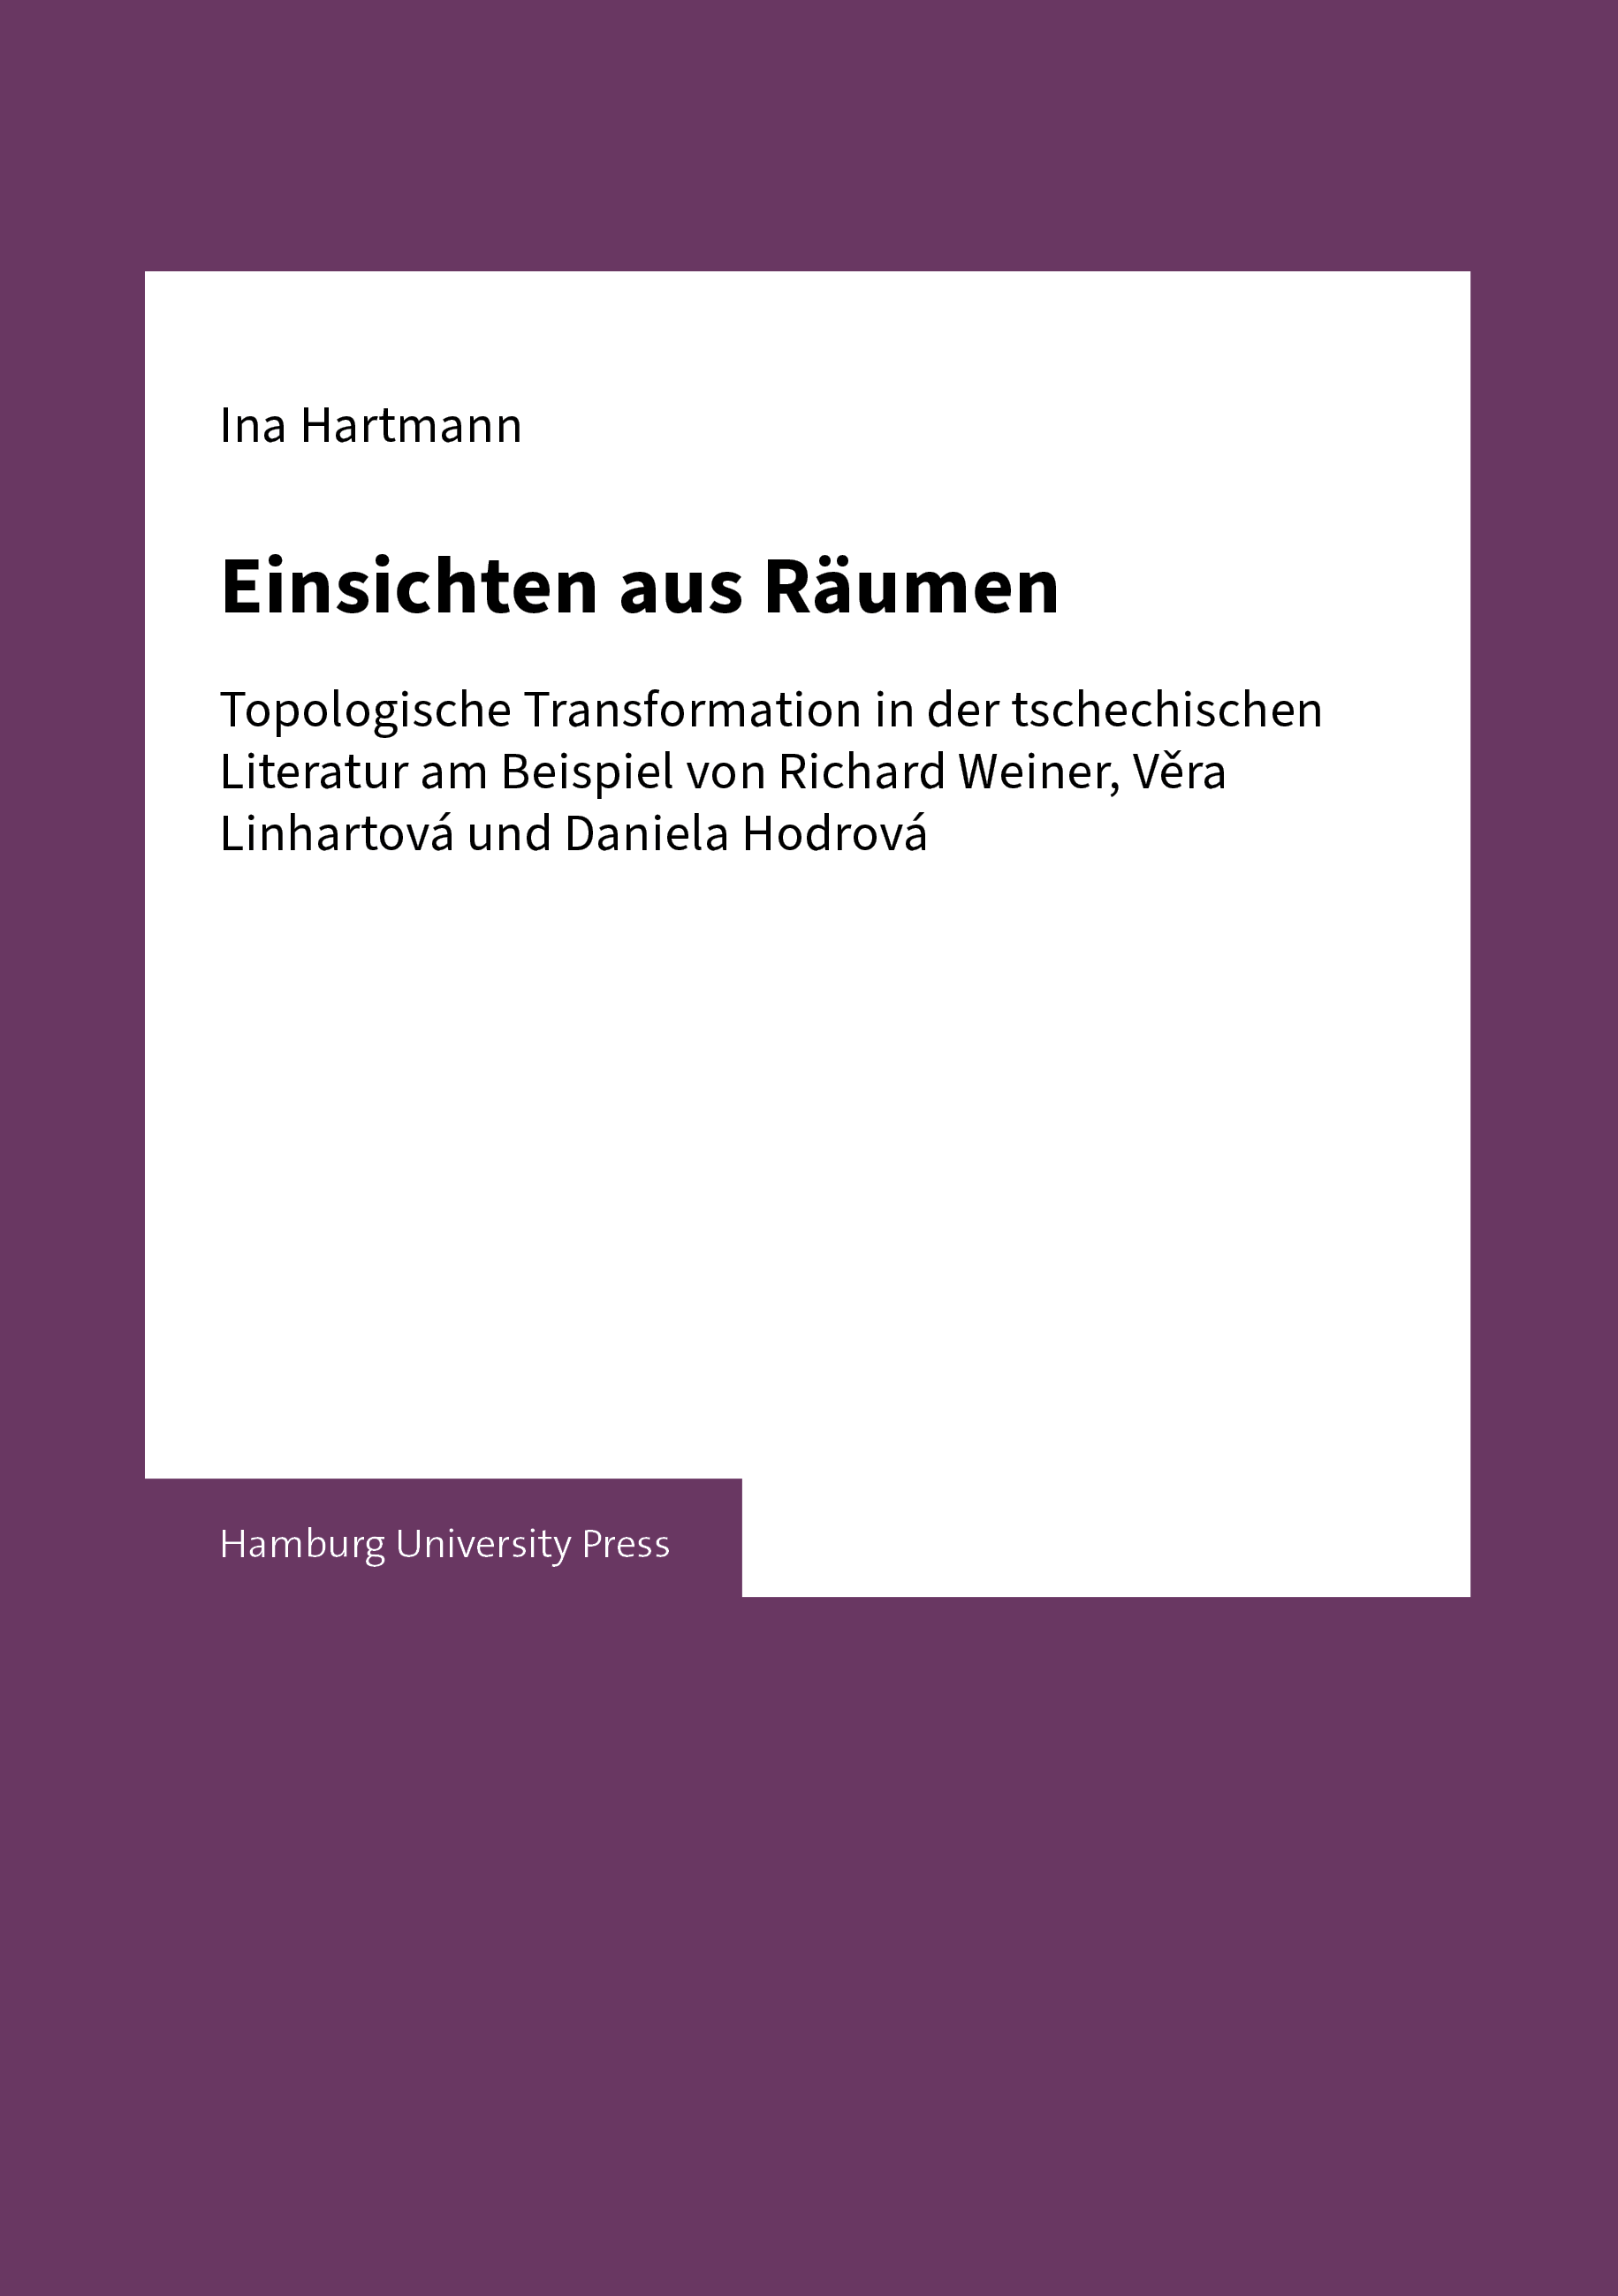 Cover image of the volume "Einsichten aus Räumen"